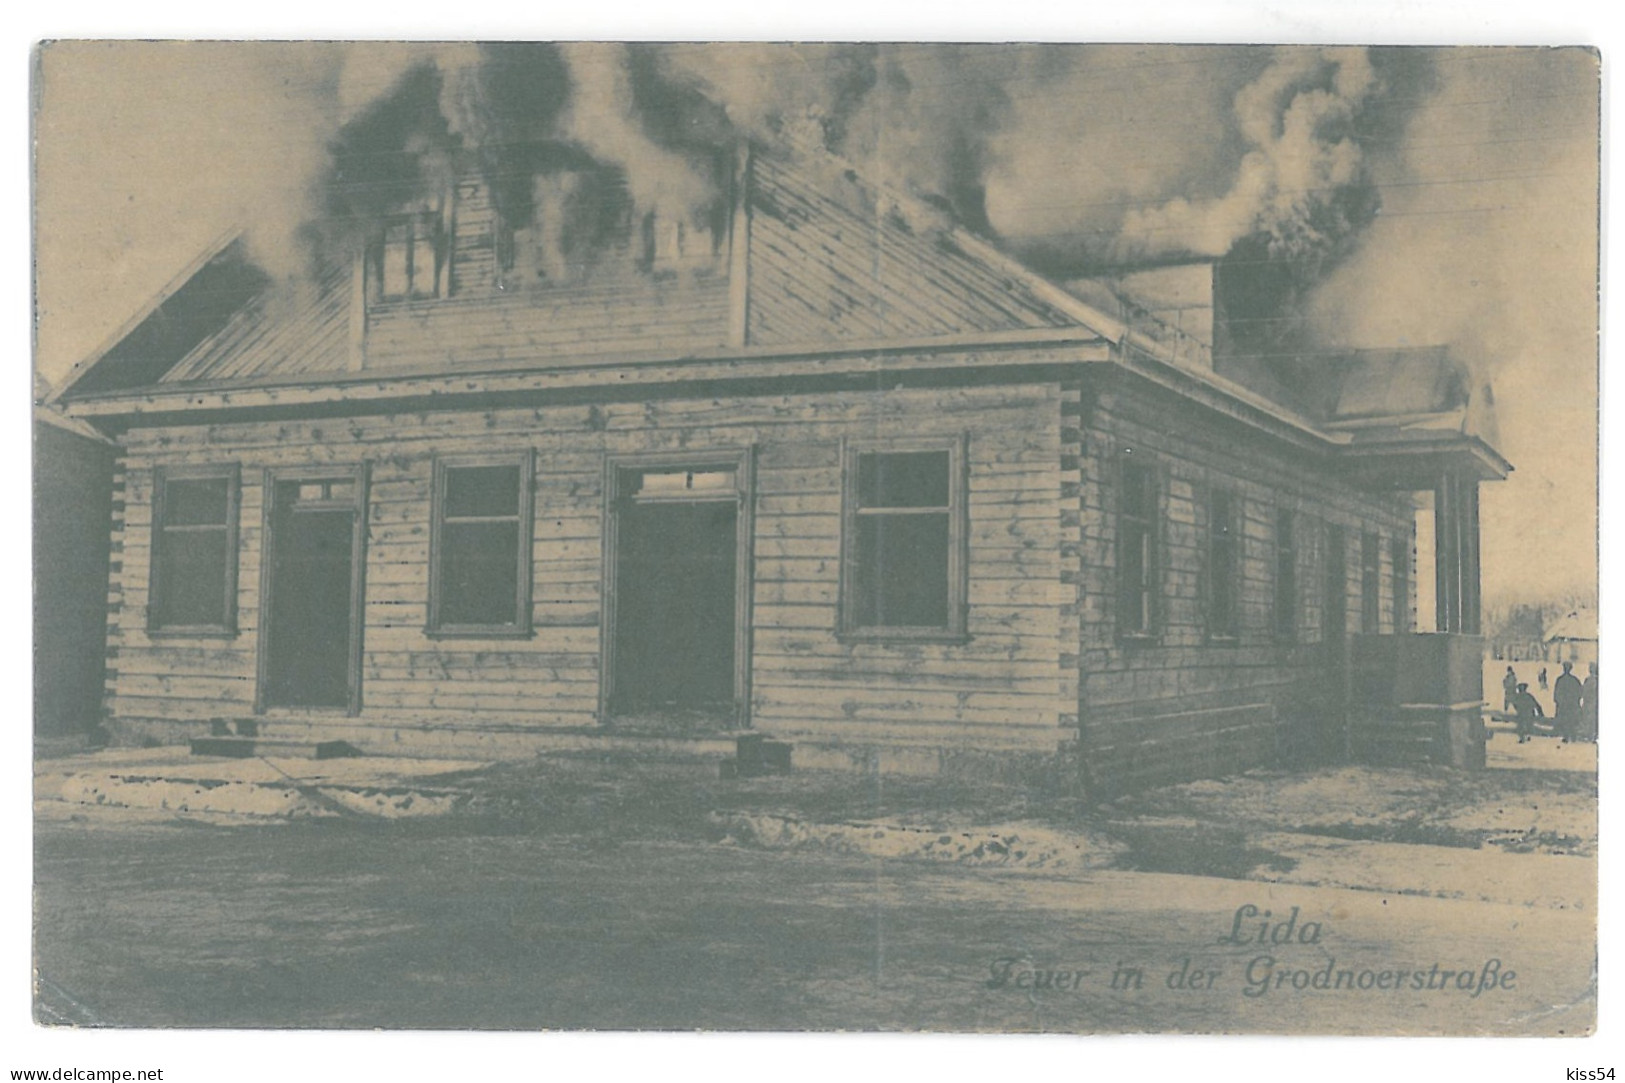 BL 32 - 14637 LIDA, House In Fire, Belarus - Old Postcard, CENSOR - Used - 1916 - Belarus